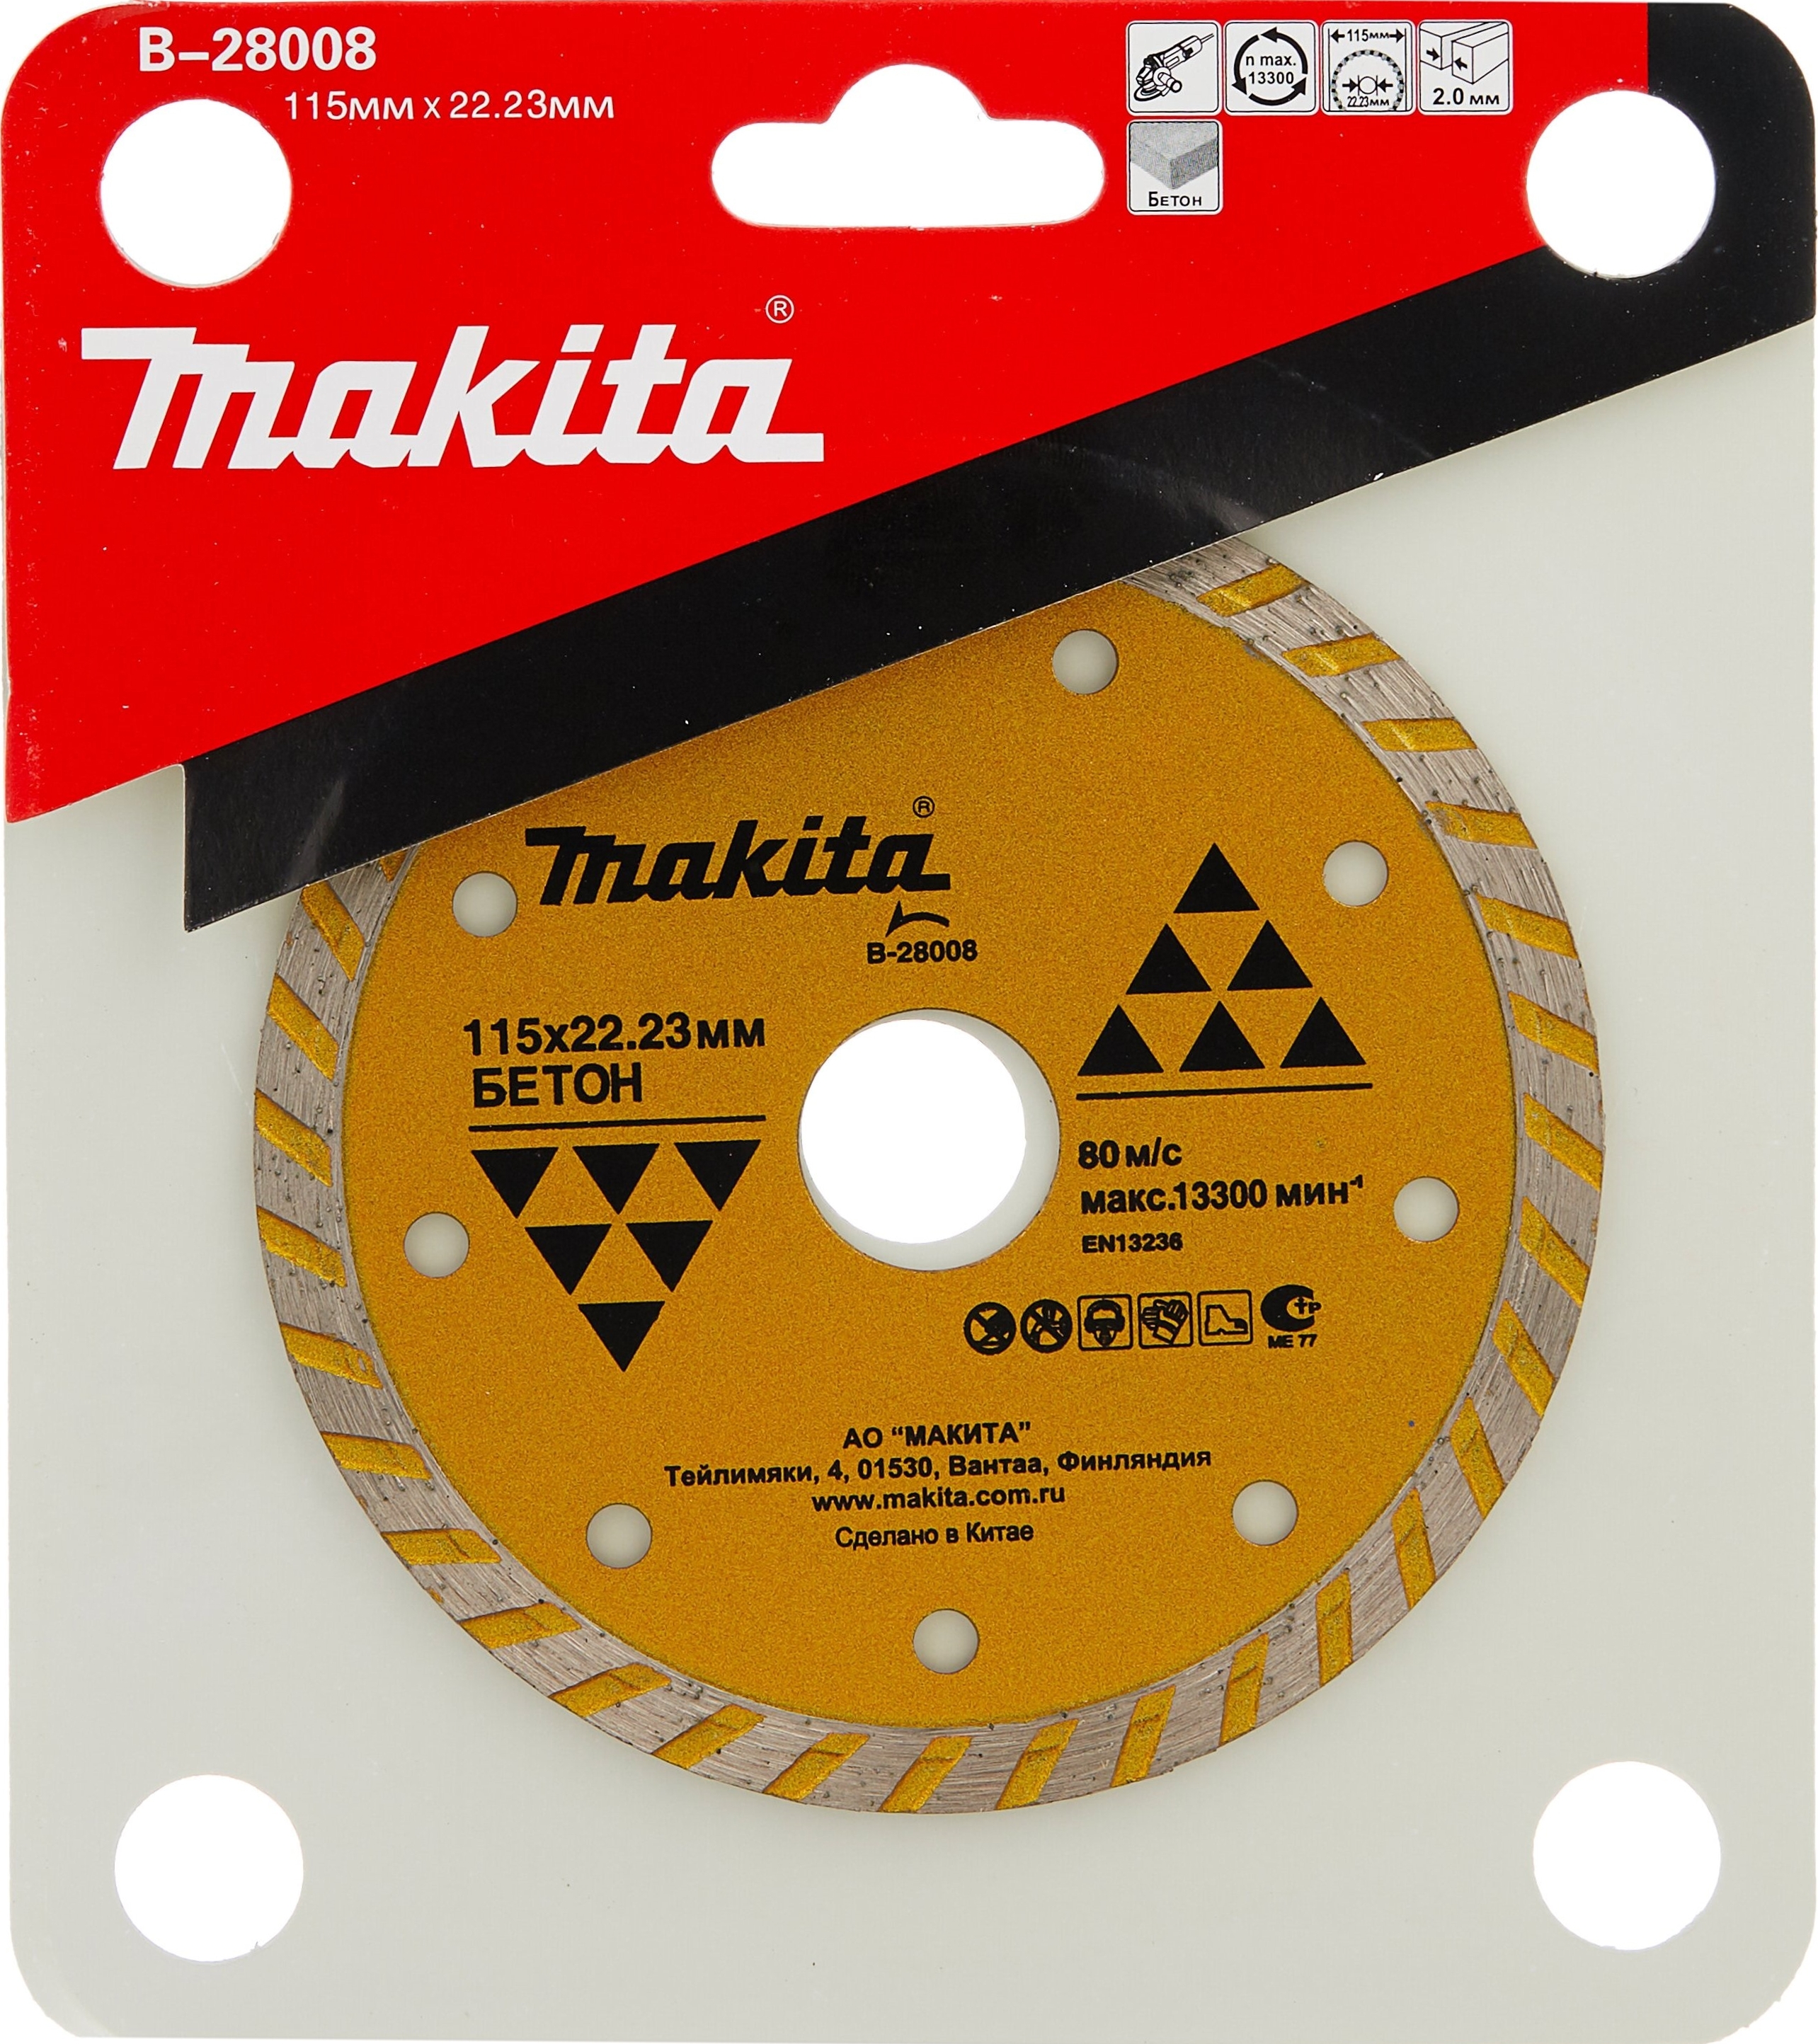 MAKITA Алмазный диск сплошной рифленый по бетону 115x22,23 MAKITA B-28008